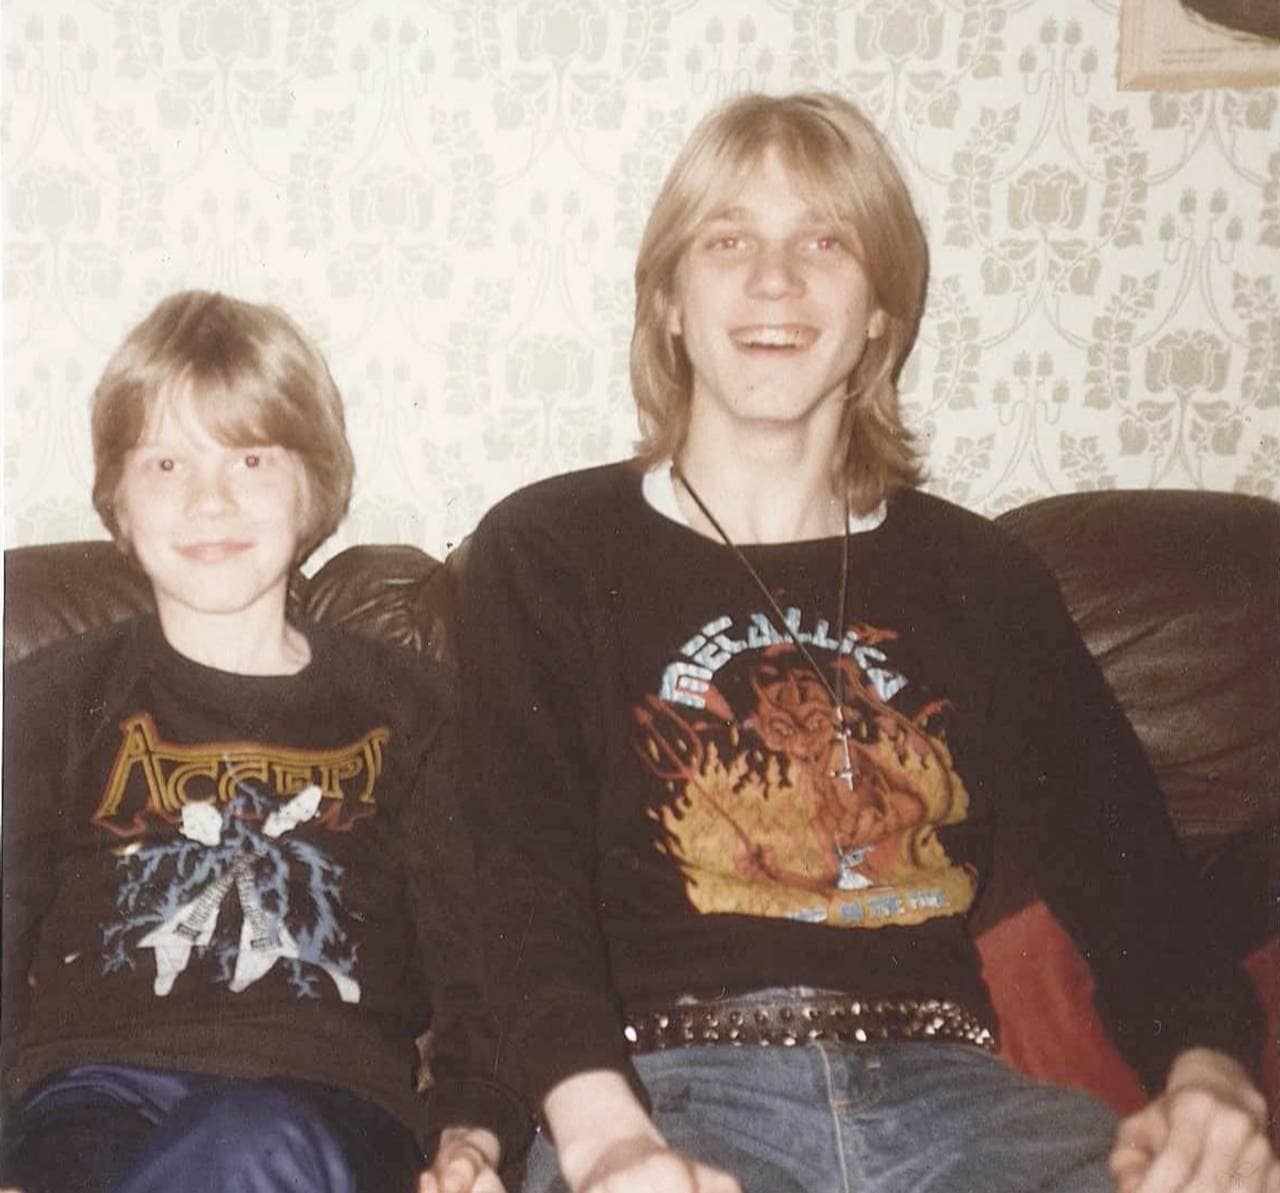 Bilde av Anders og Pelle Ohlin som ungdommer i en sofa. Begge har på seg hver sin metal-band-genser og ser ganske fornøyde ut.